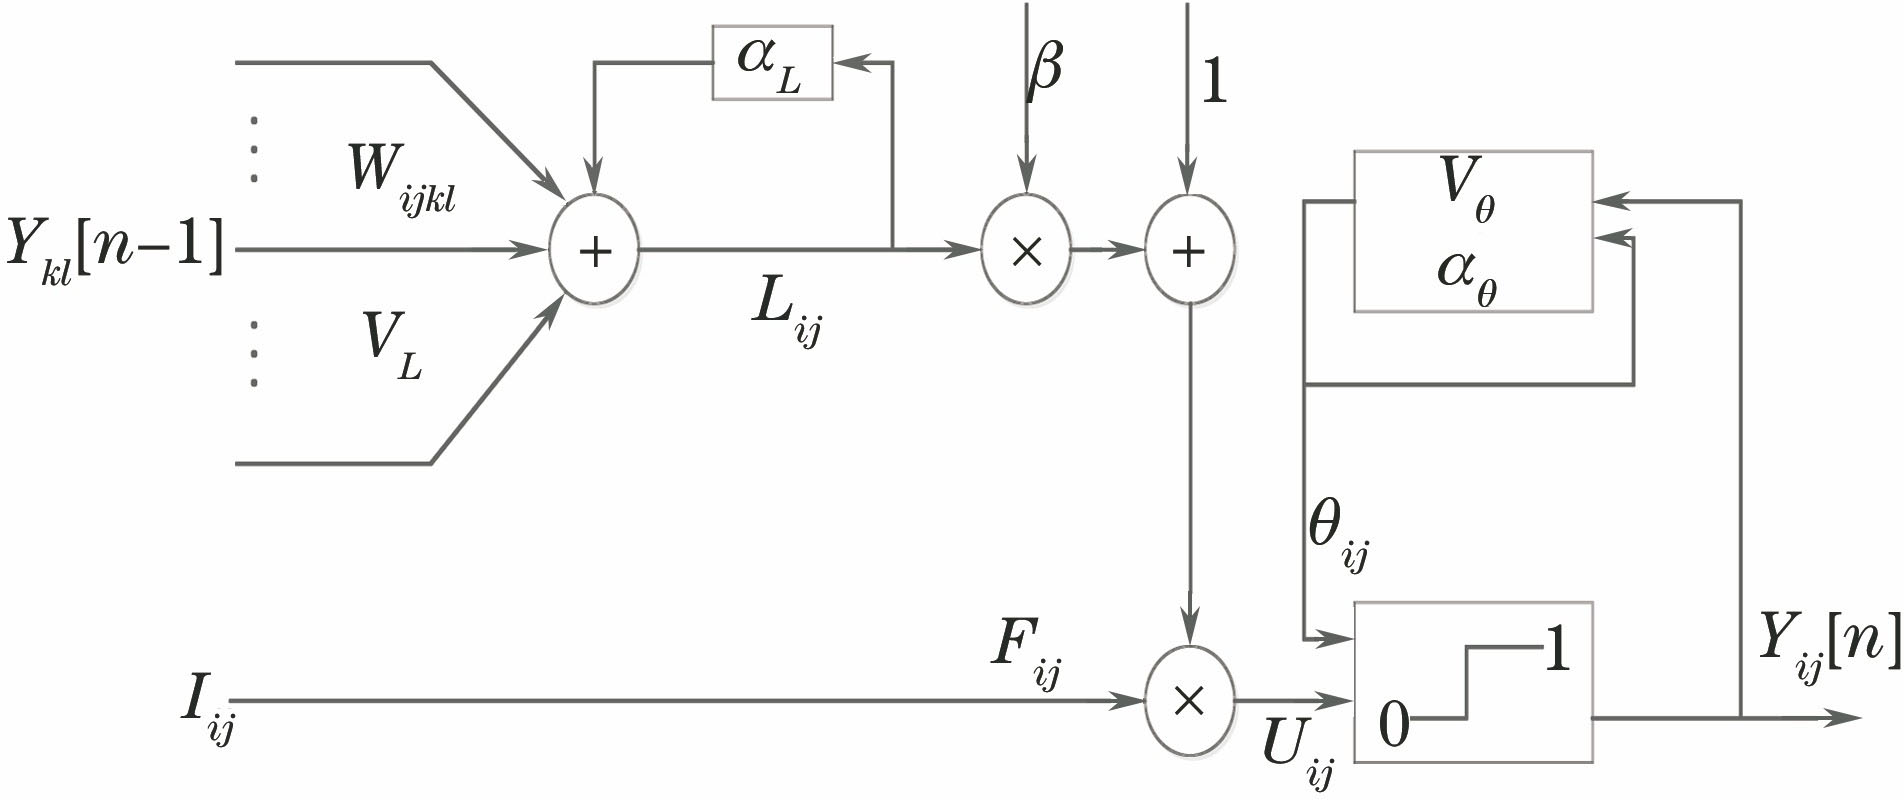 Simplified model of PCNN